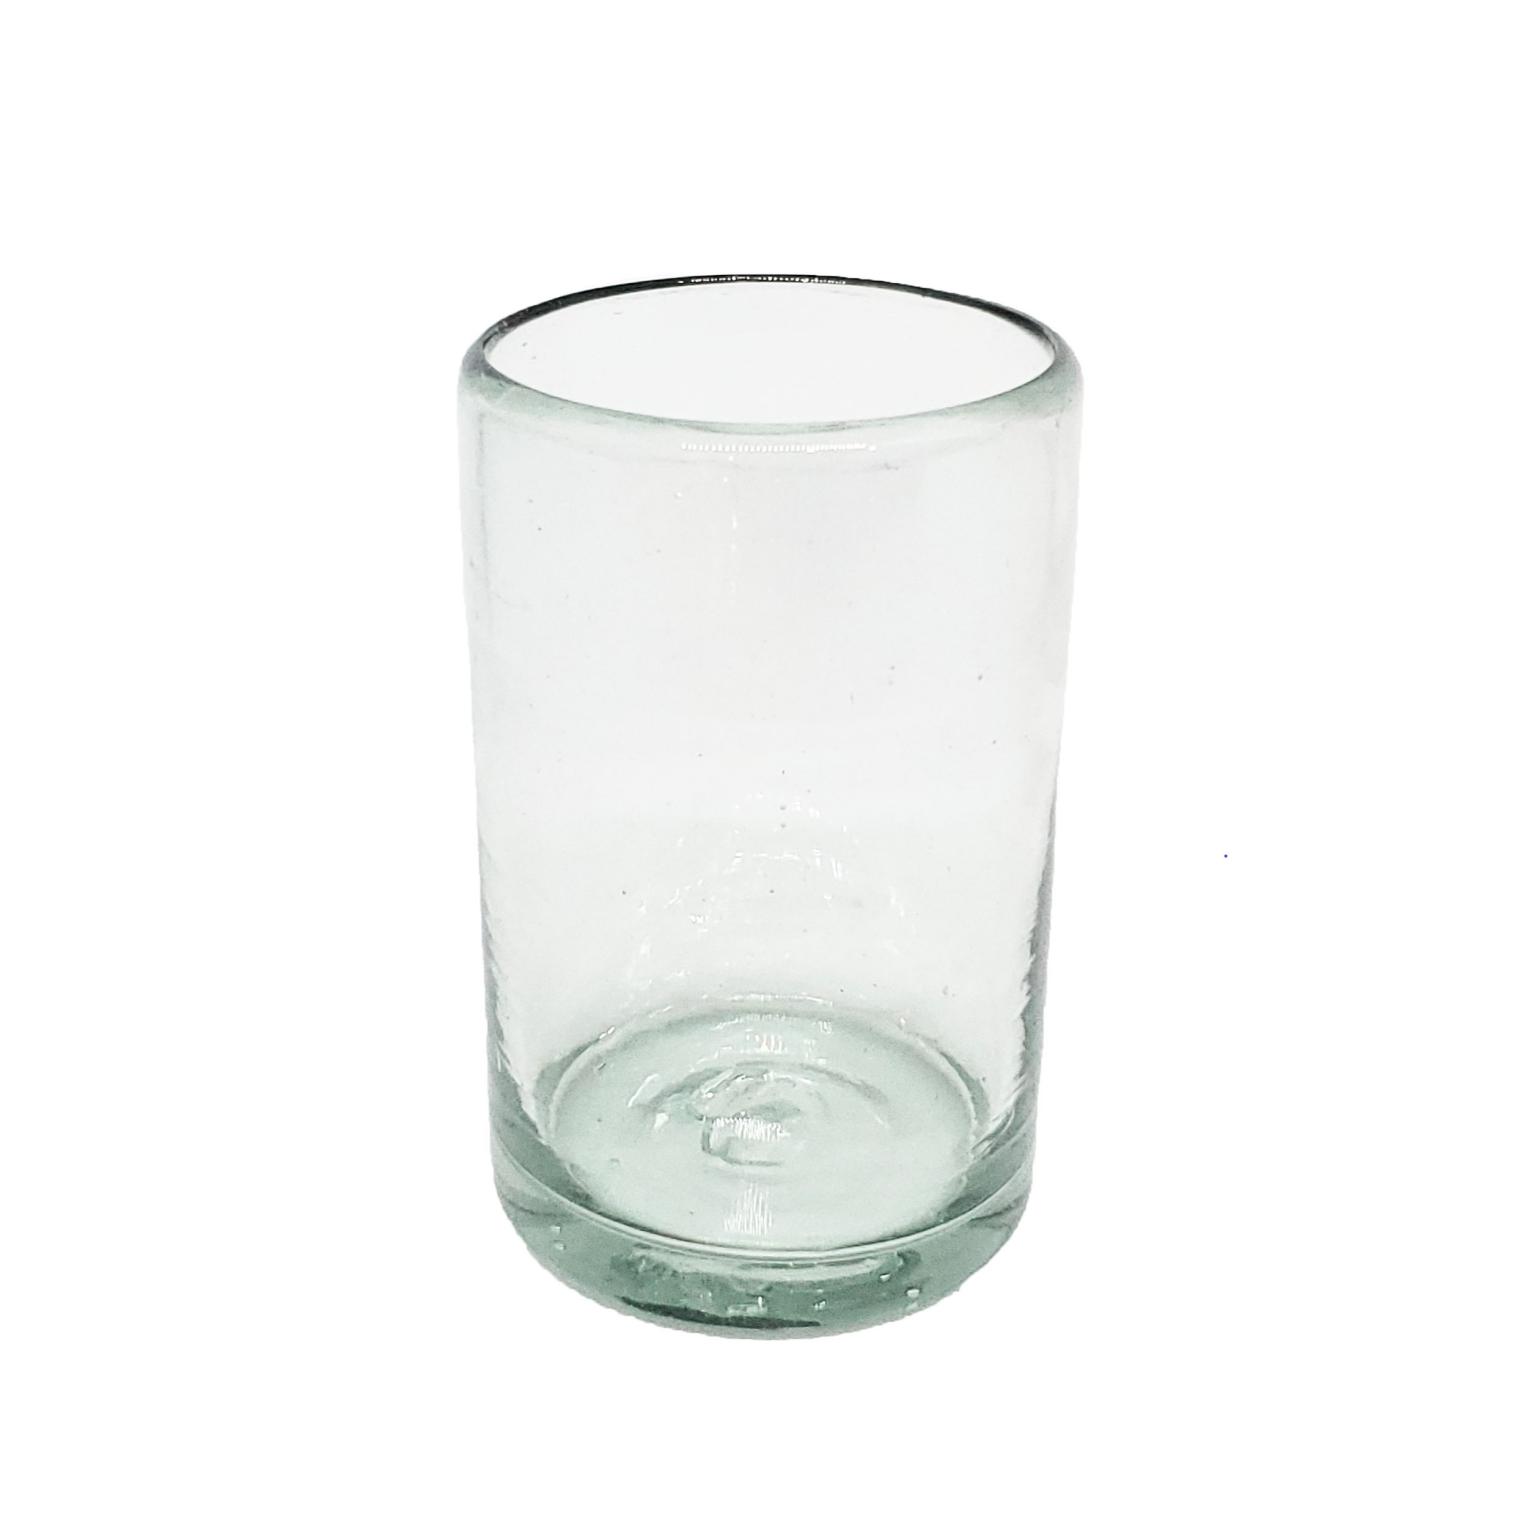 Ofertas / vasos Jugo 9oz Transparentes / stos artesanales vasos le darn un toque clsico a su bebida favorita.